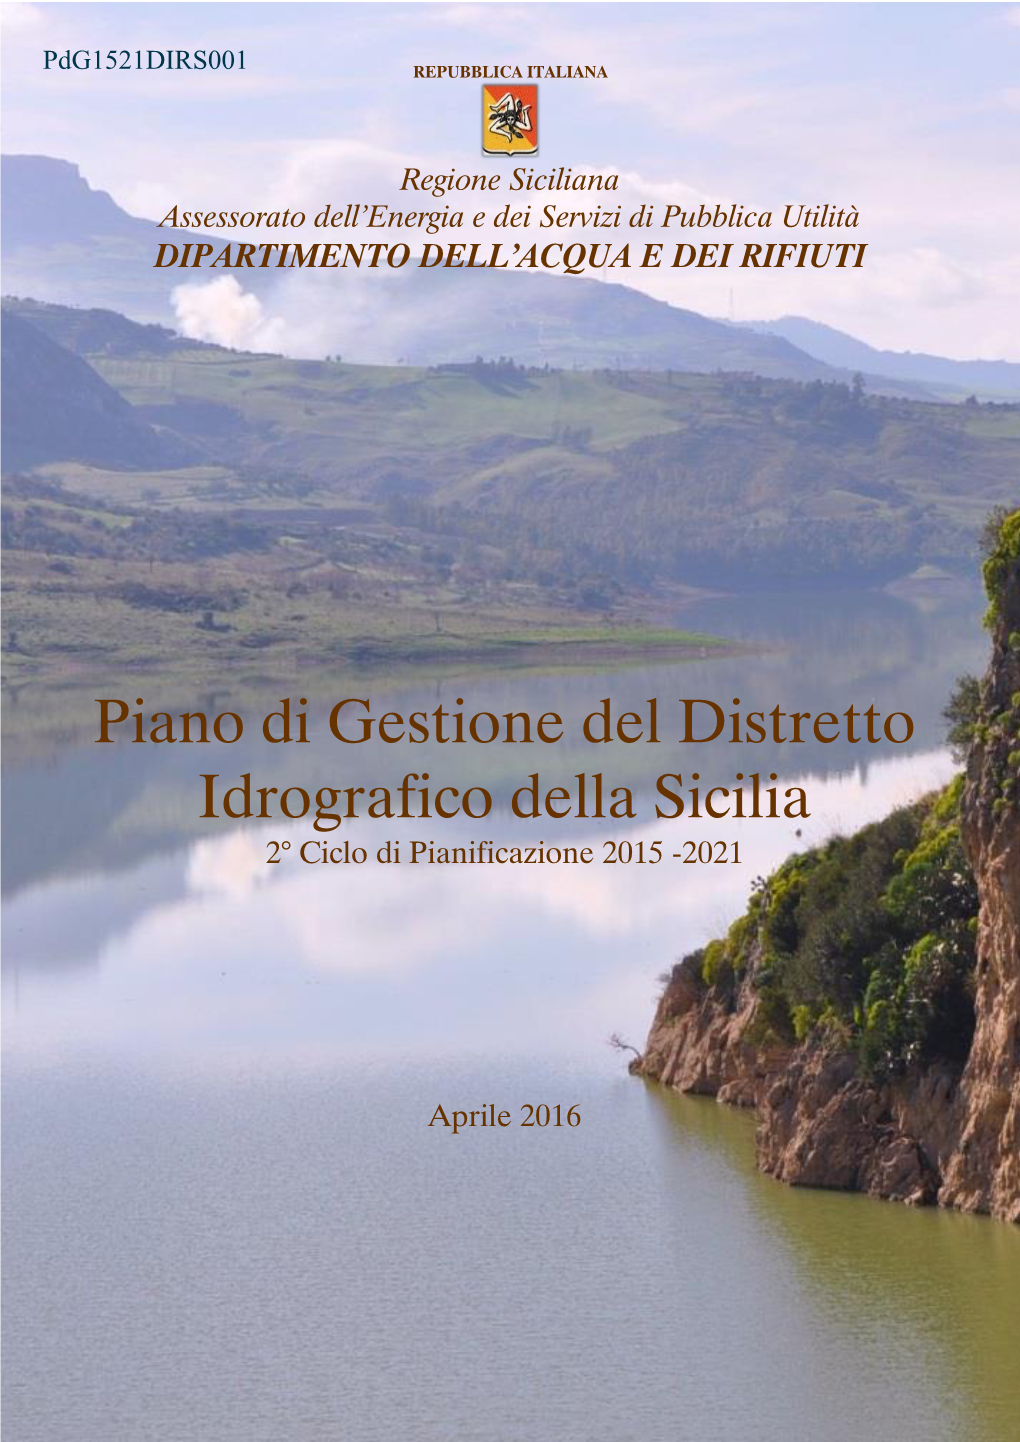 Piano Di Gestione Del Distretto Idrografico Della Sicilia 2° Ciclo Di Pianificazione 2015 -2021